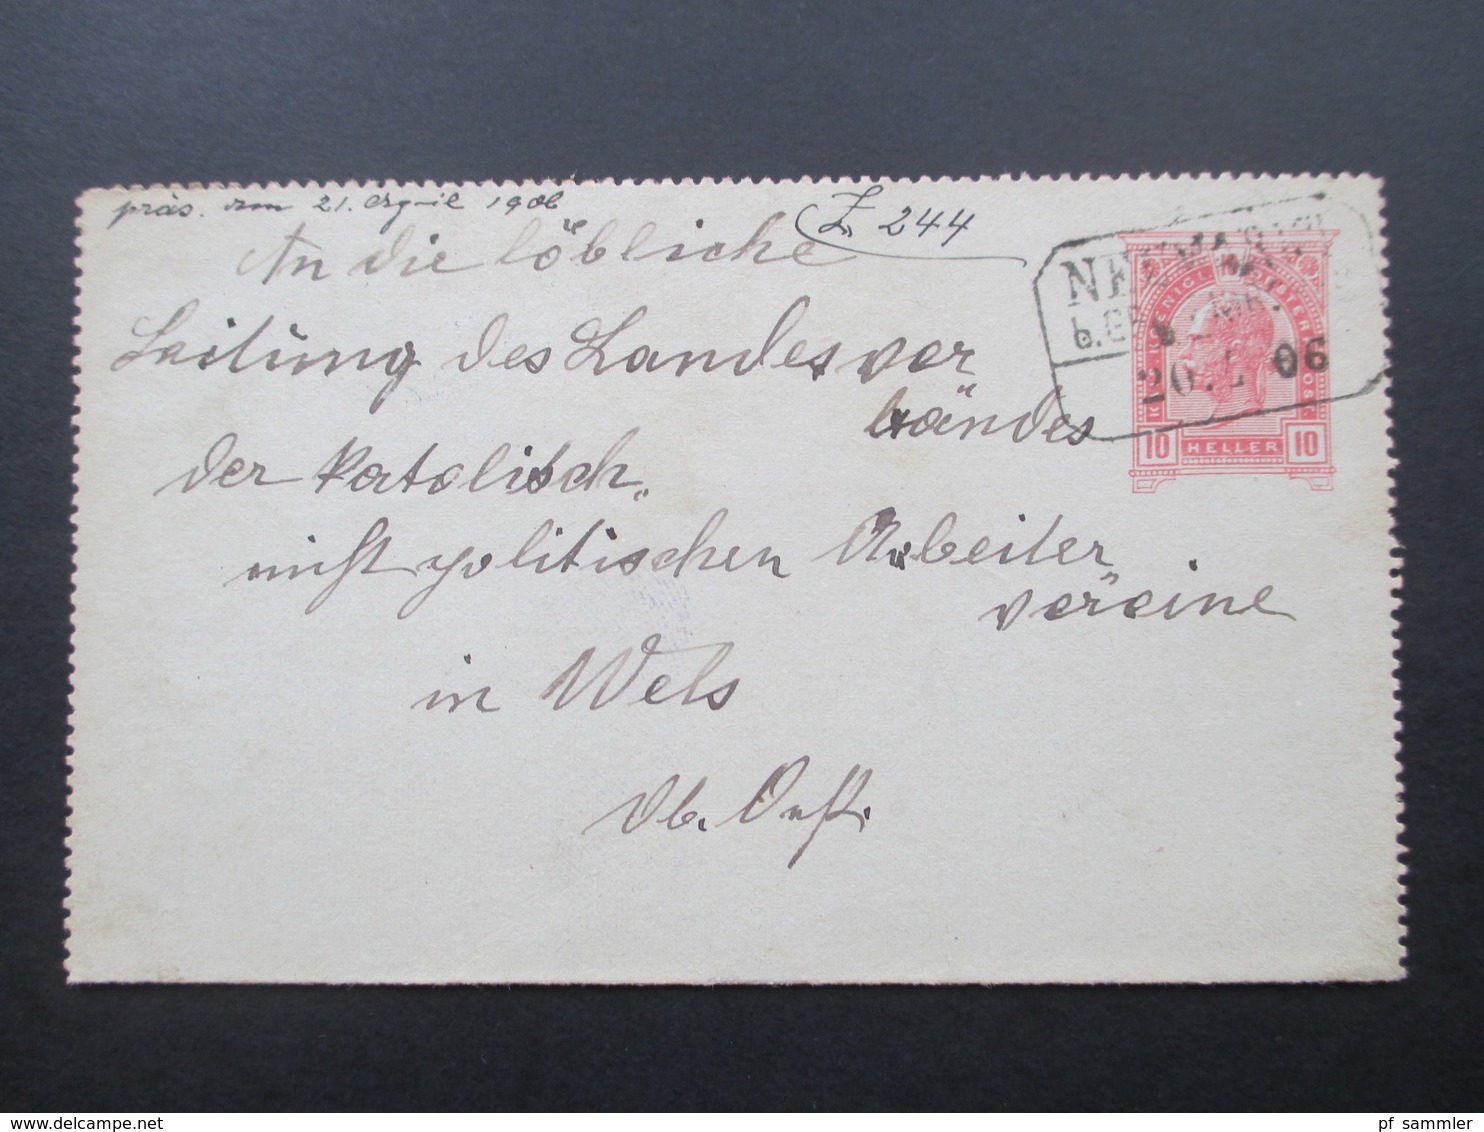 Österreich 1906 Kartenbrief 10 Heller Mit Bahnpost Stempel?! Neumarkt Nach Wels Mit AK Stempel - Briefe U. Dokumente